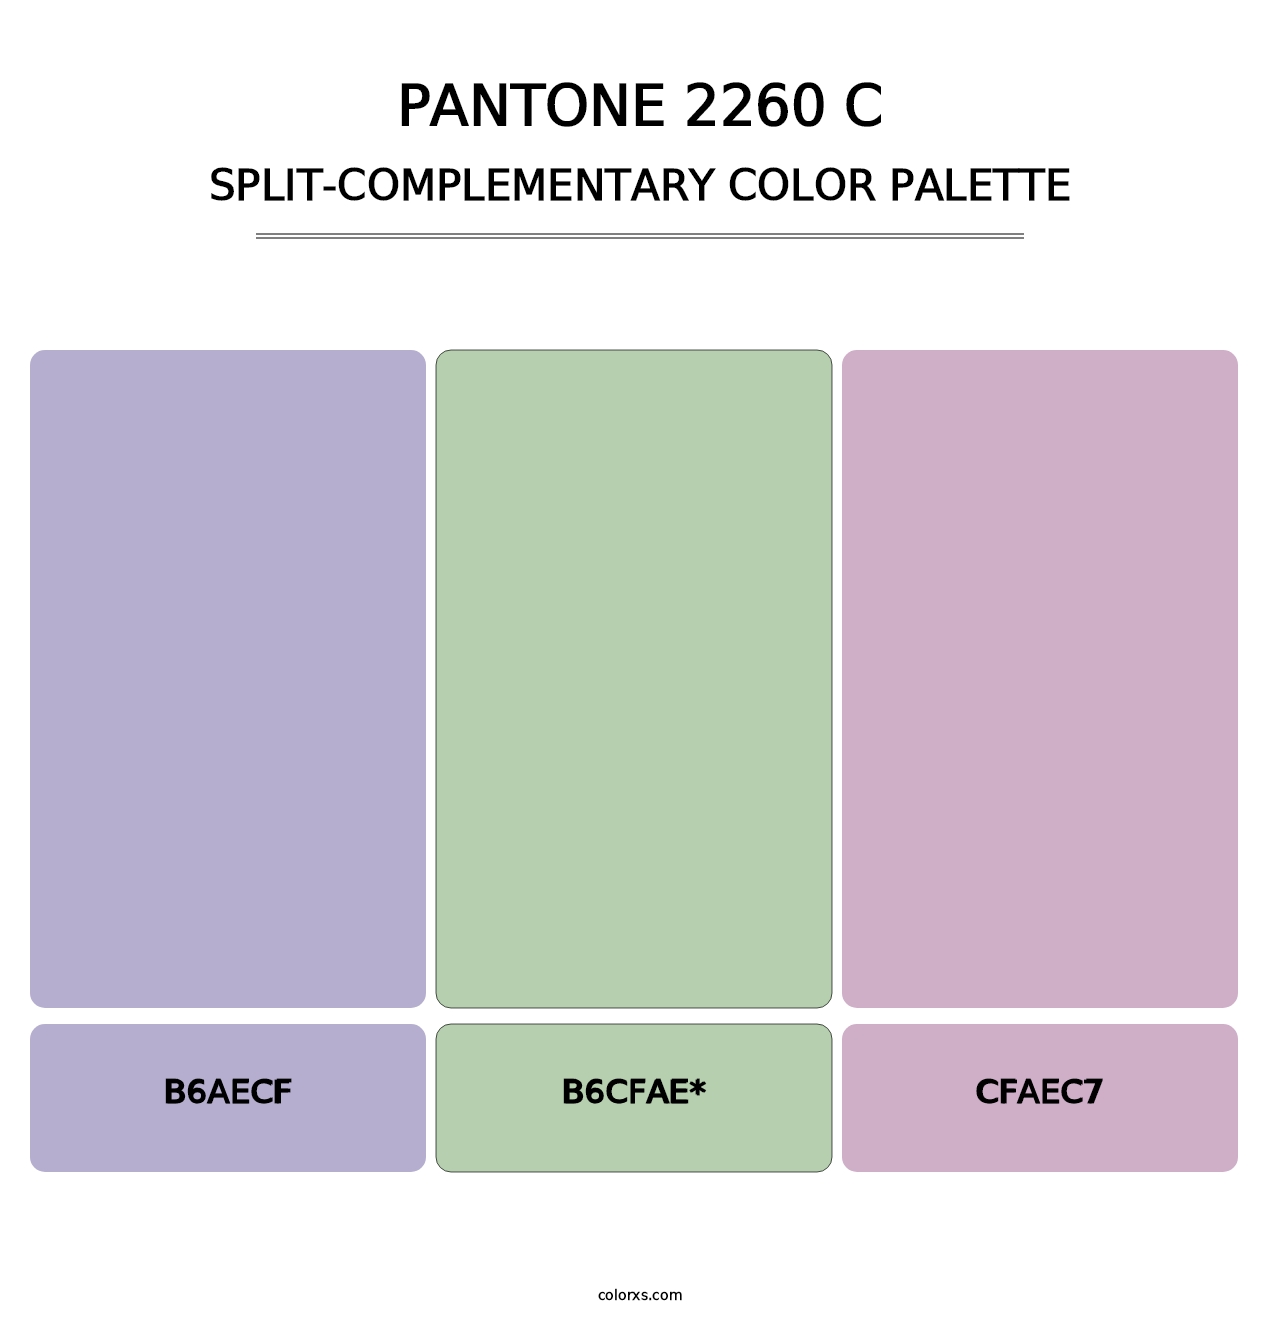 PANTONE 2260 C - Split-Complementary Color Palette